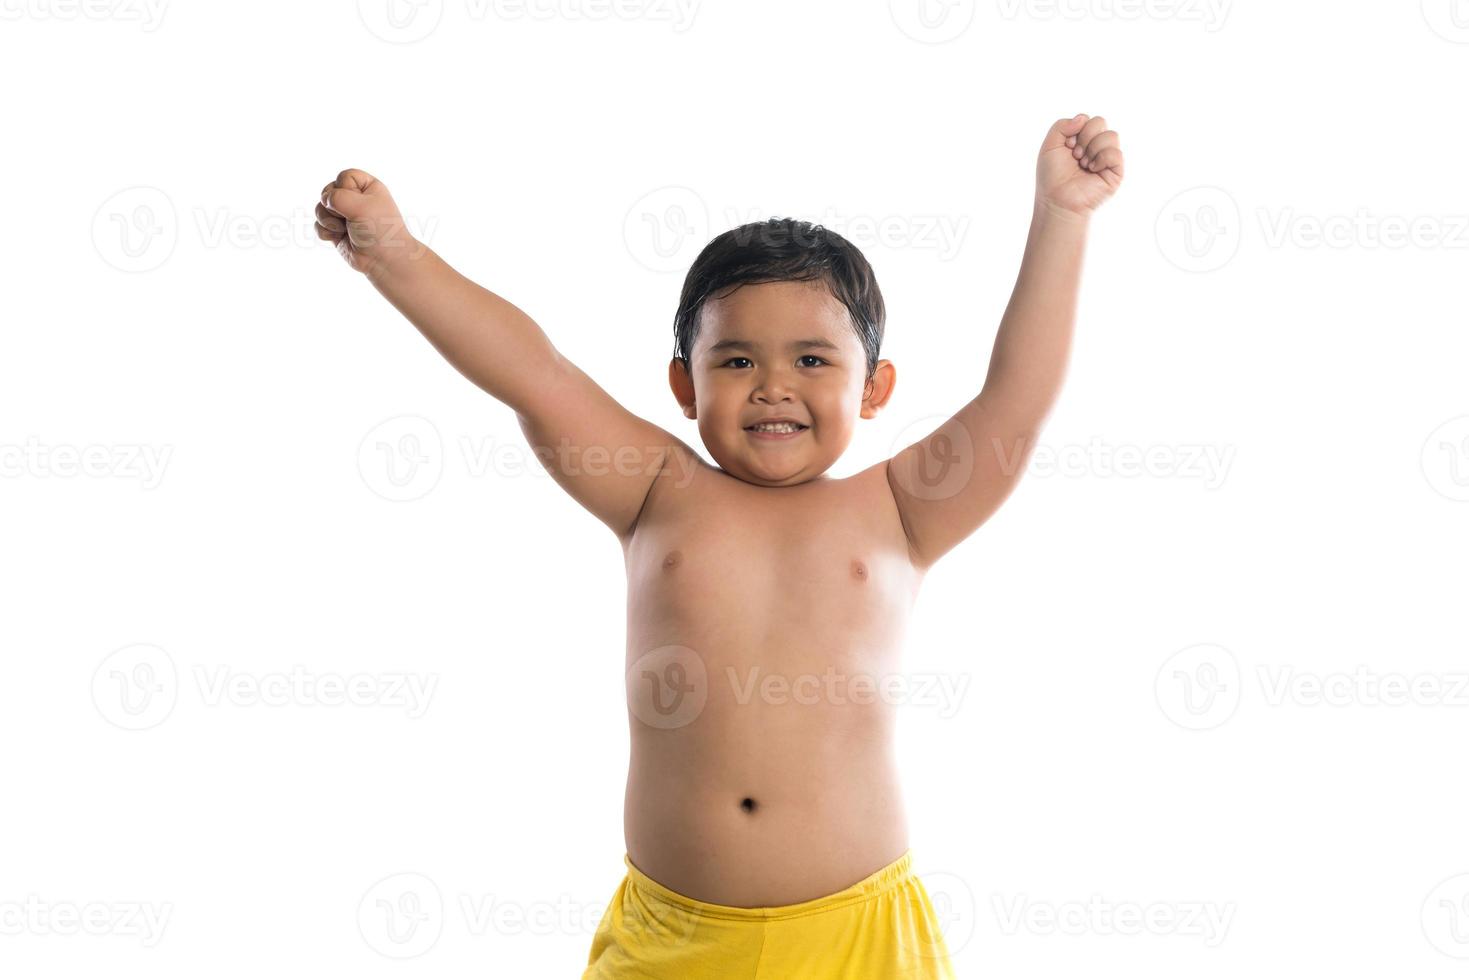 menino engraçado mostrando seus músculos bíceps isolados no fundo branco foto